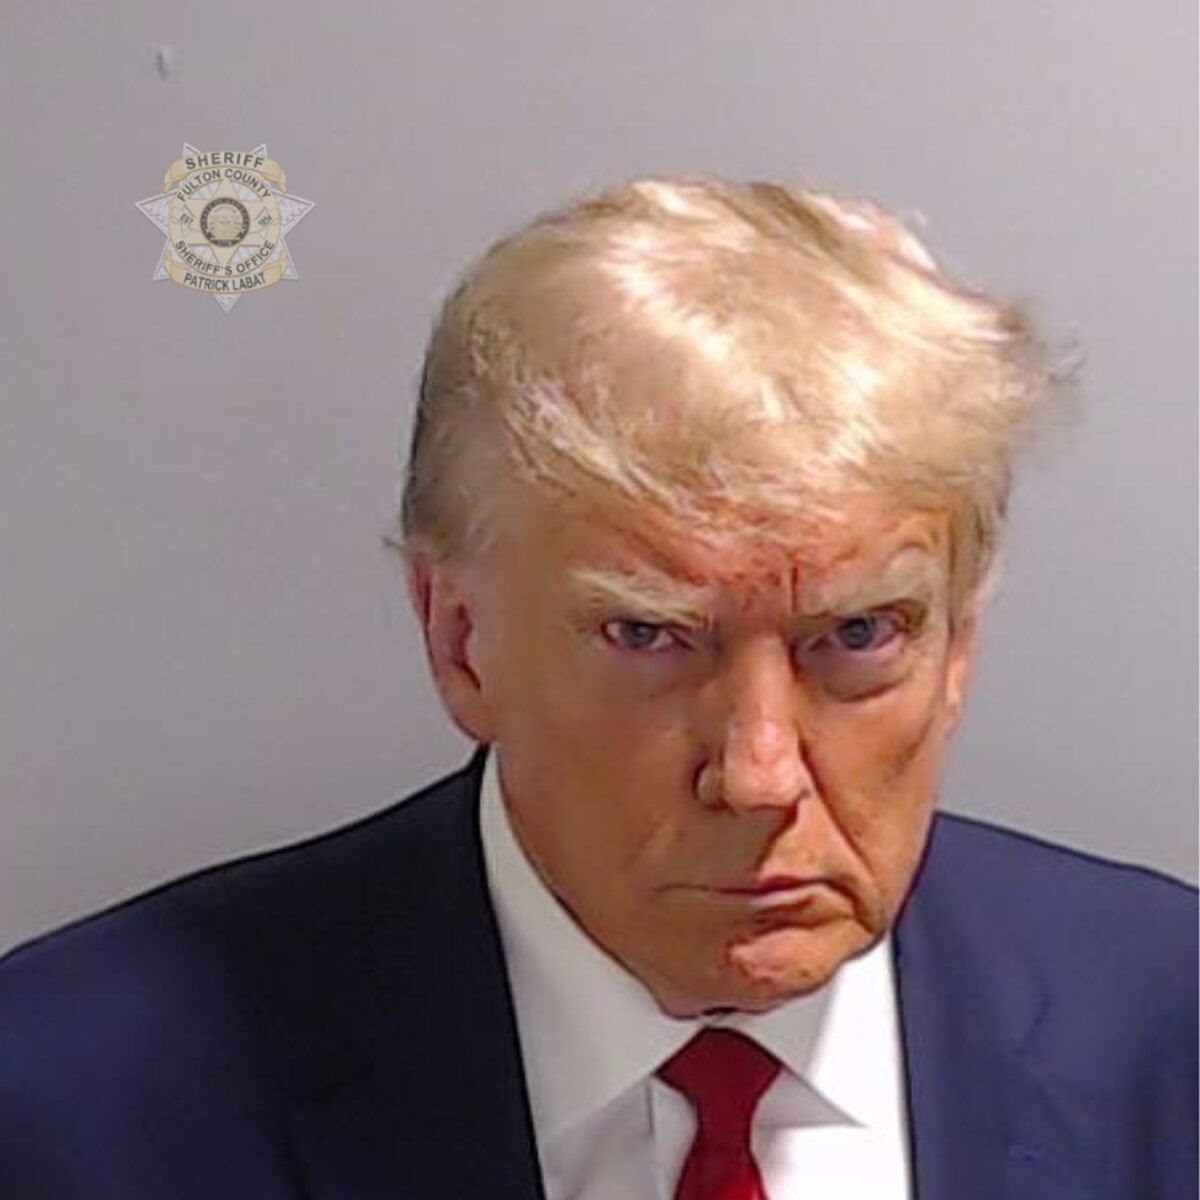 Tấm ảnh trong hồ sơ nhà tù đã mang về cho ông Trump 7,1 triệu USD tiền gây quỹ tranh cử